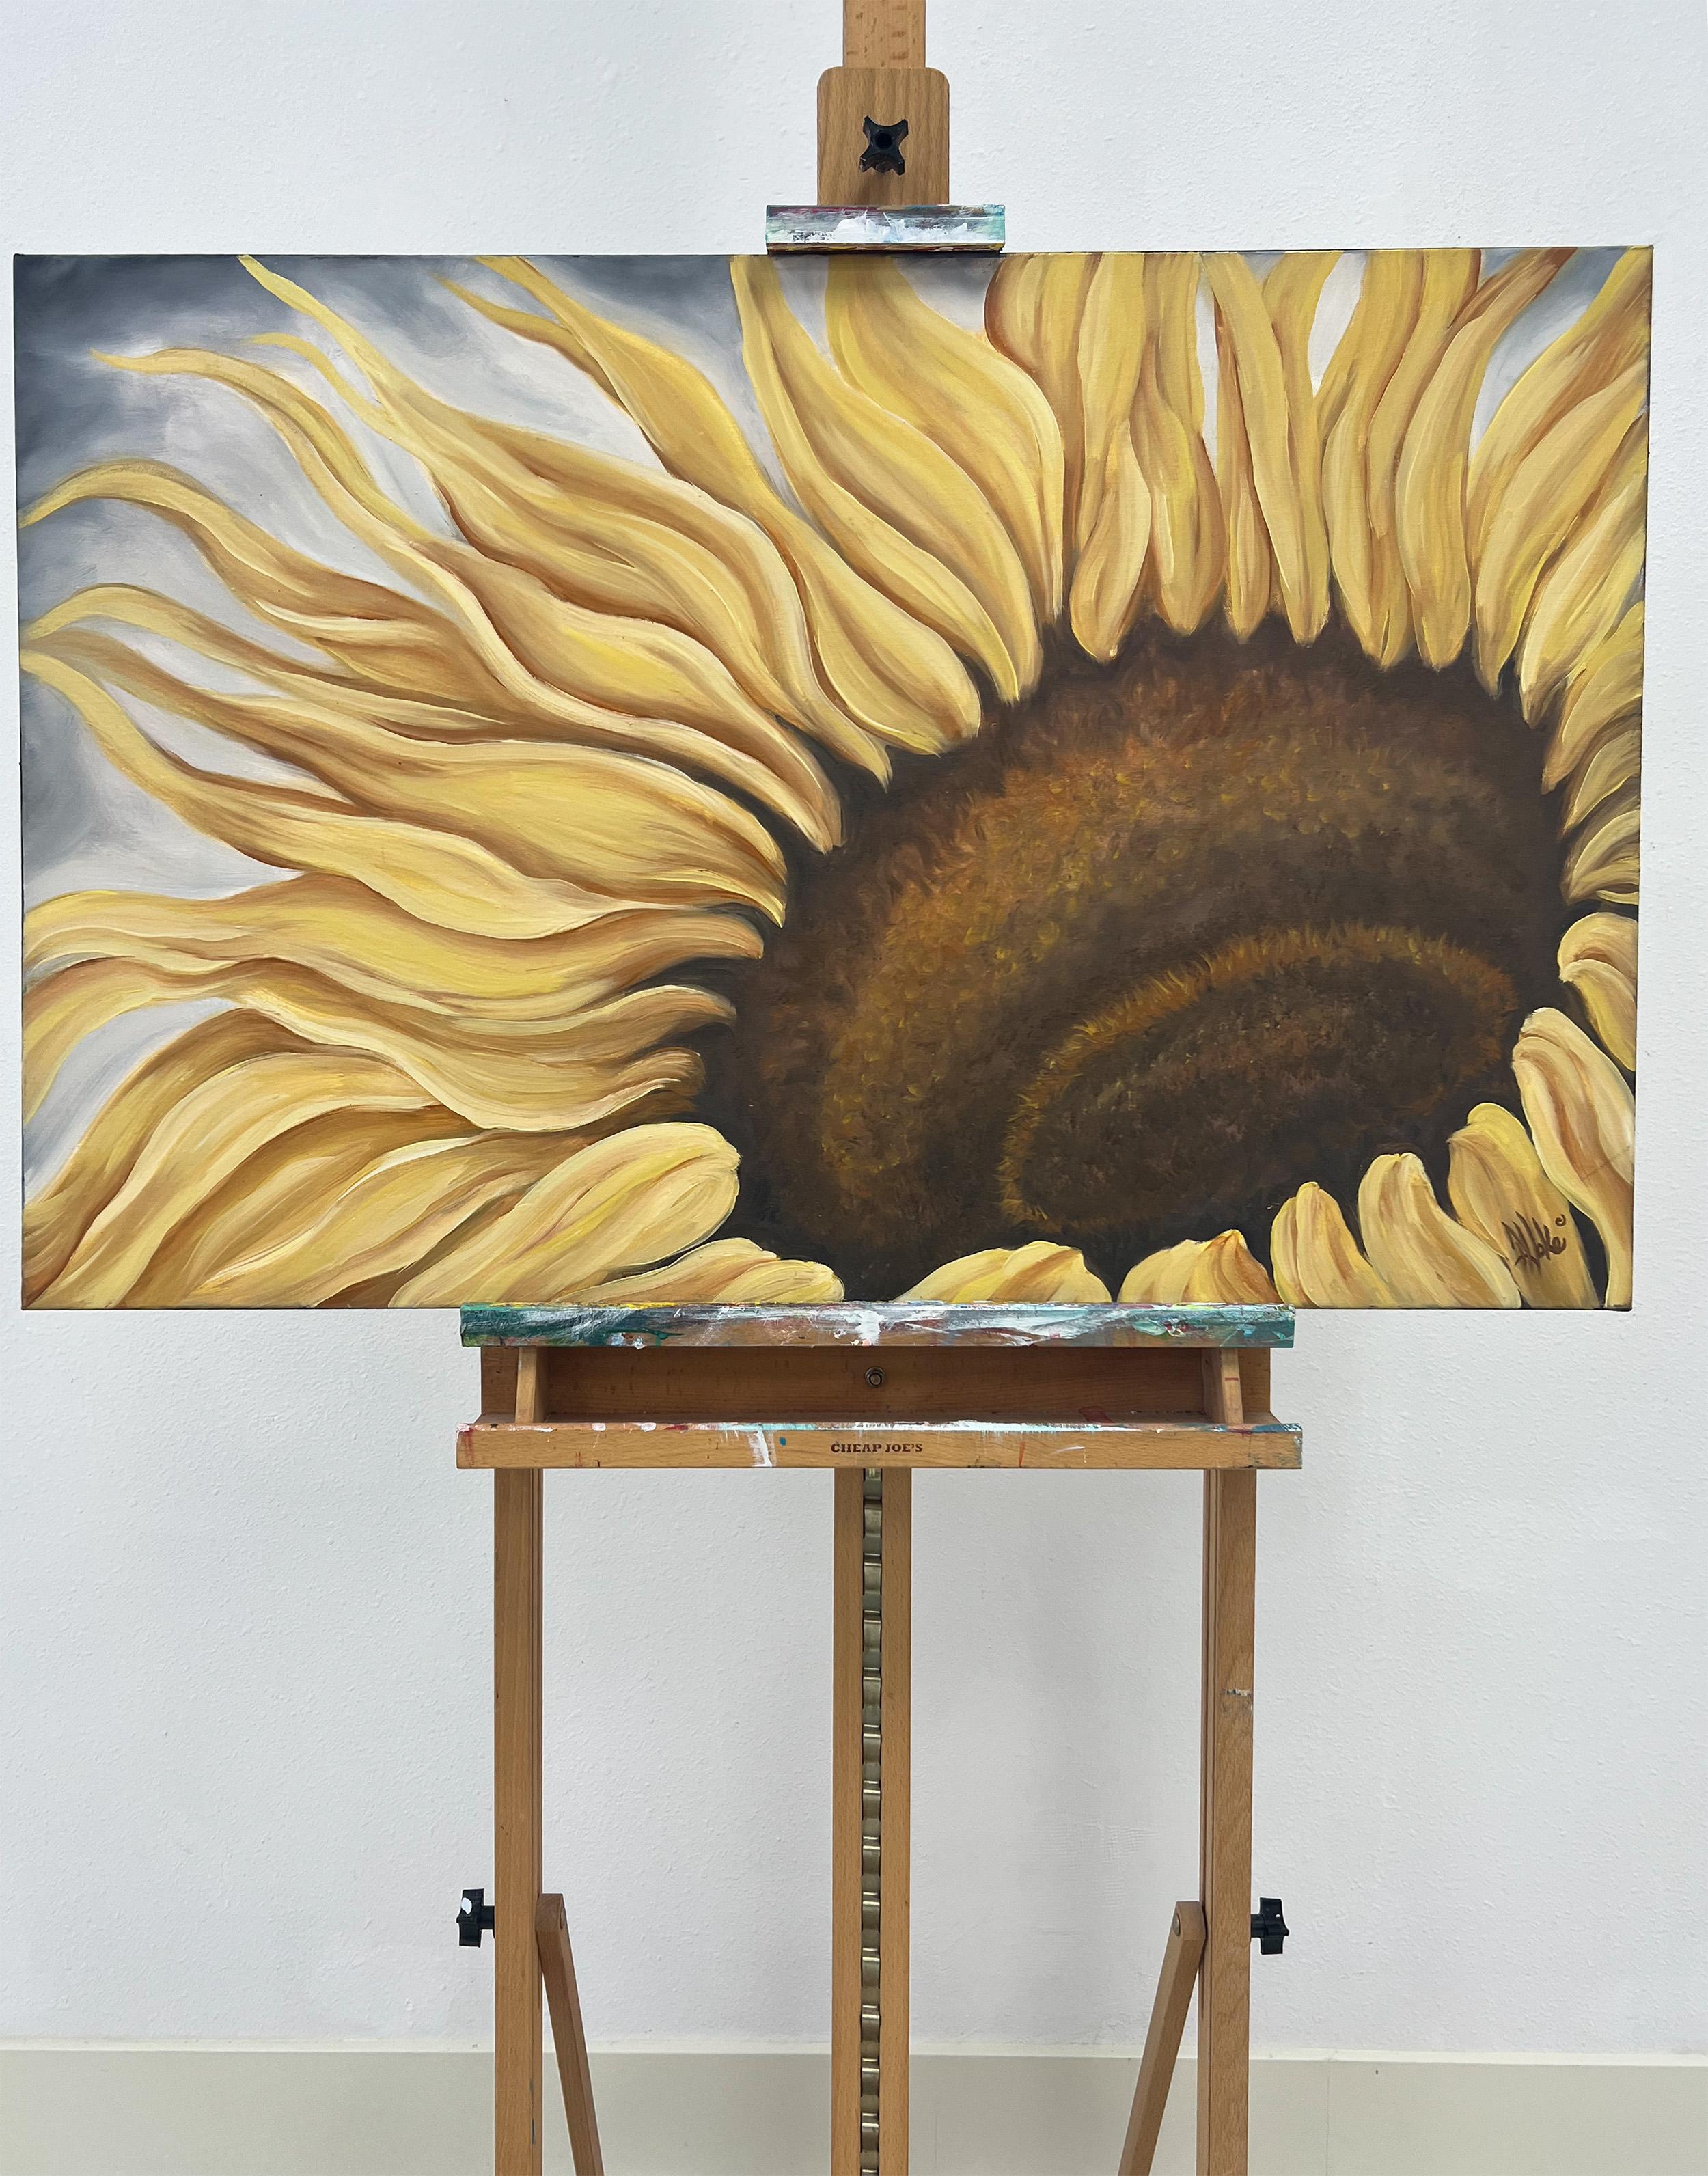 <p>Kommentare der Künstlerin<br />Die Künstlerin Pamela Hoke stellt eine sanfte, bewegende Umarmung einer Sonnenblume dar, eine ihrer Lieblingsblumen. Sie schöpft ihre Inspiration direkt aus dem Kontakt mit der Natur und möchte damit ihre tiefe